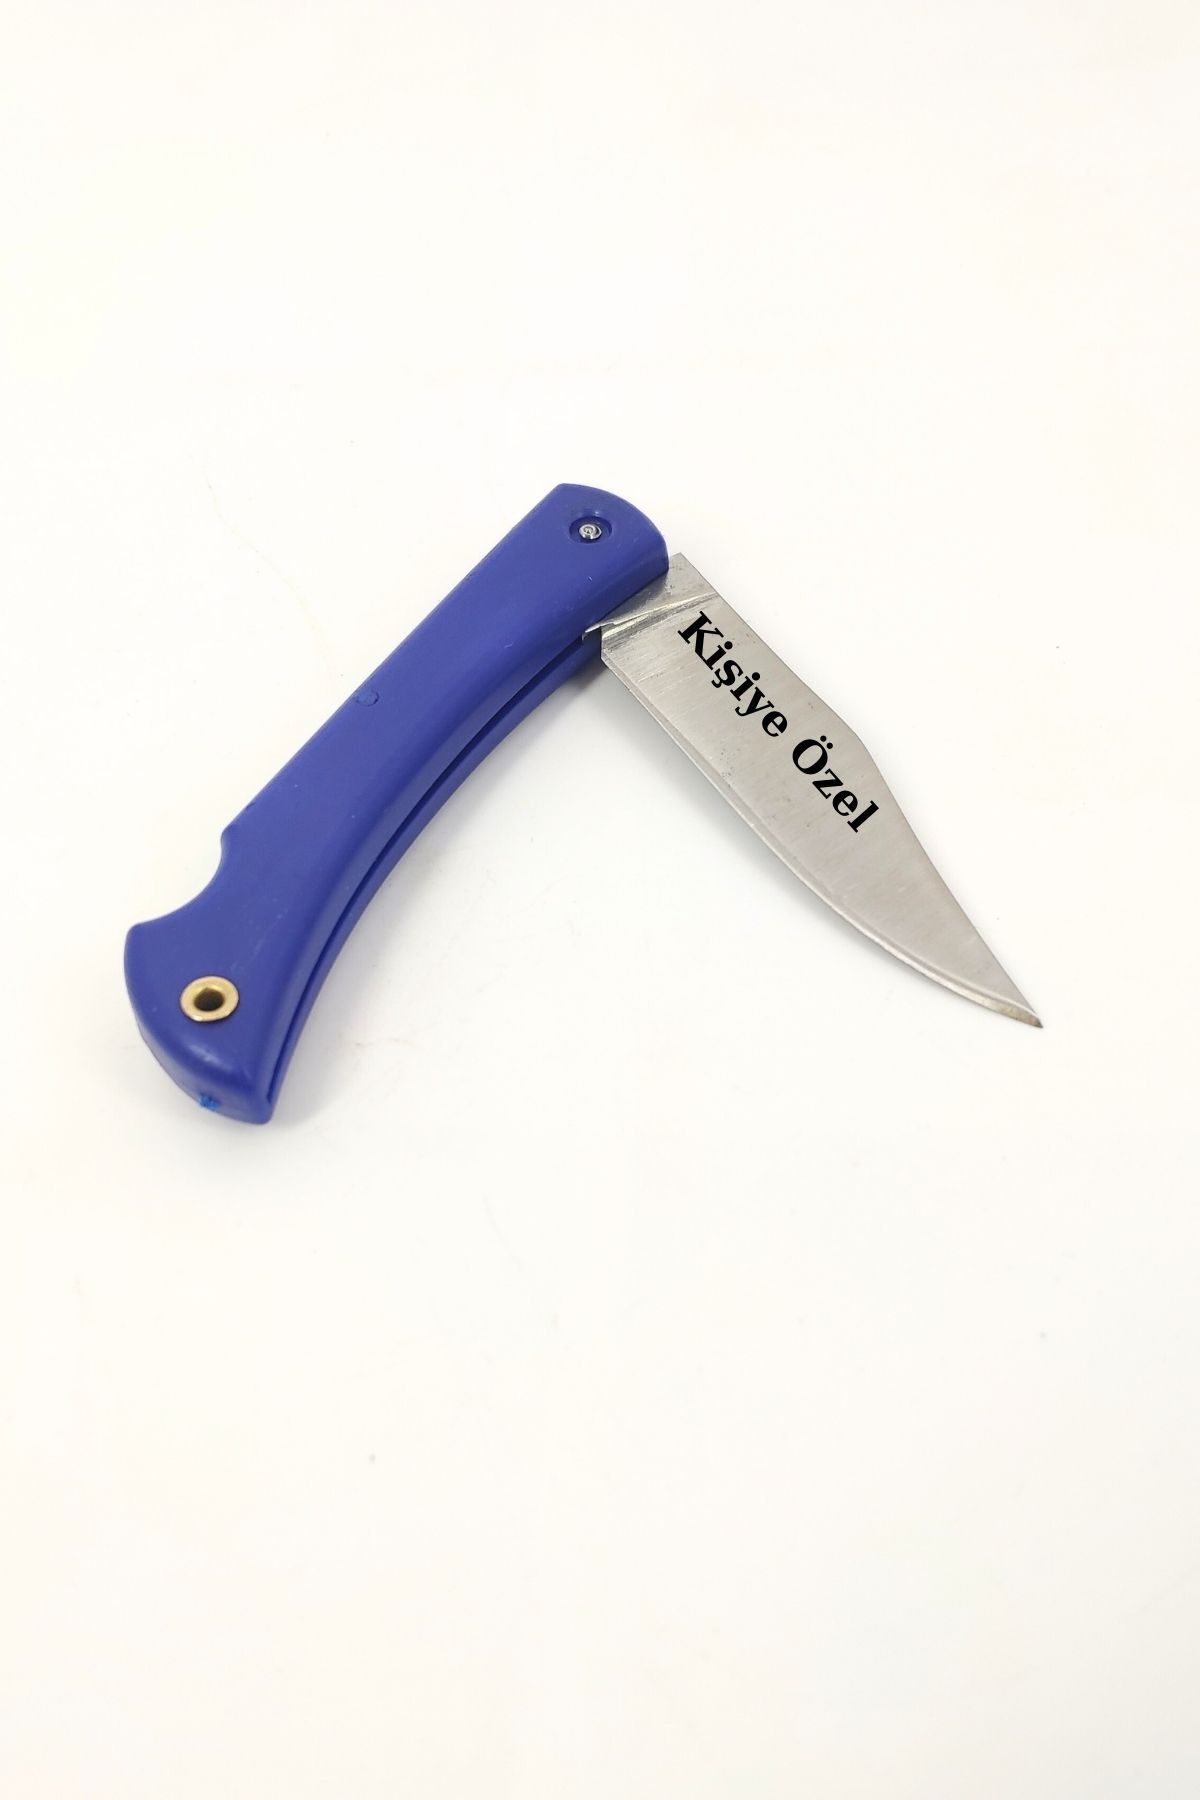 SürLaz Outdoor Cep Çakısı Paslanmaz Çelik Katlanır Mekanizmalı Kamp Bıçağı Mavi Renk